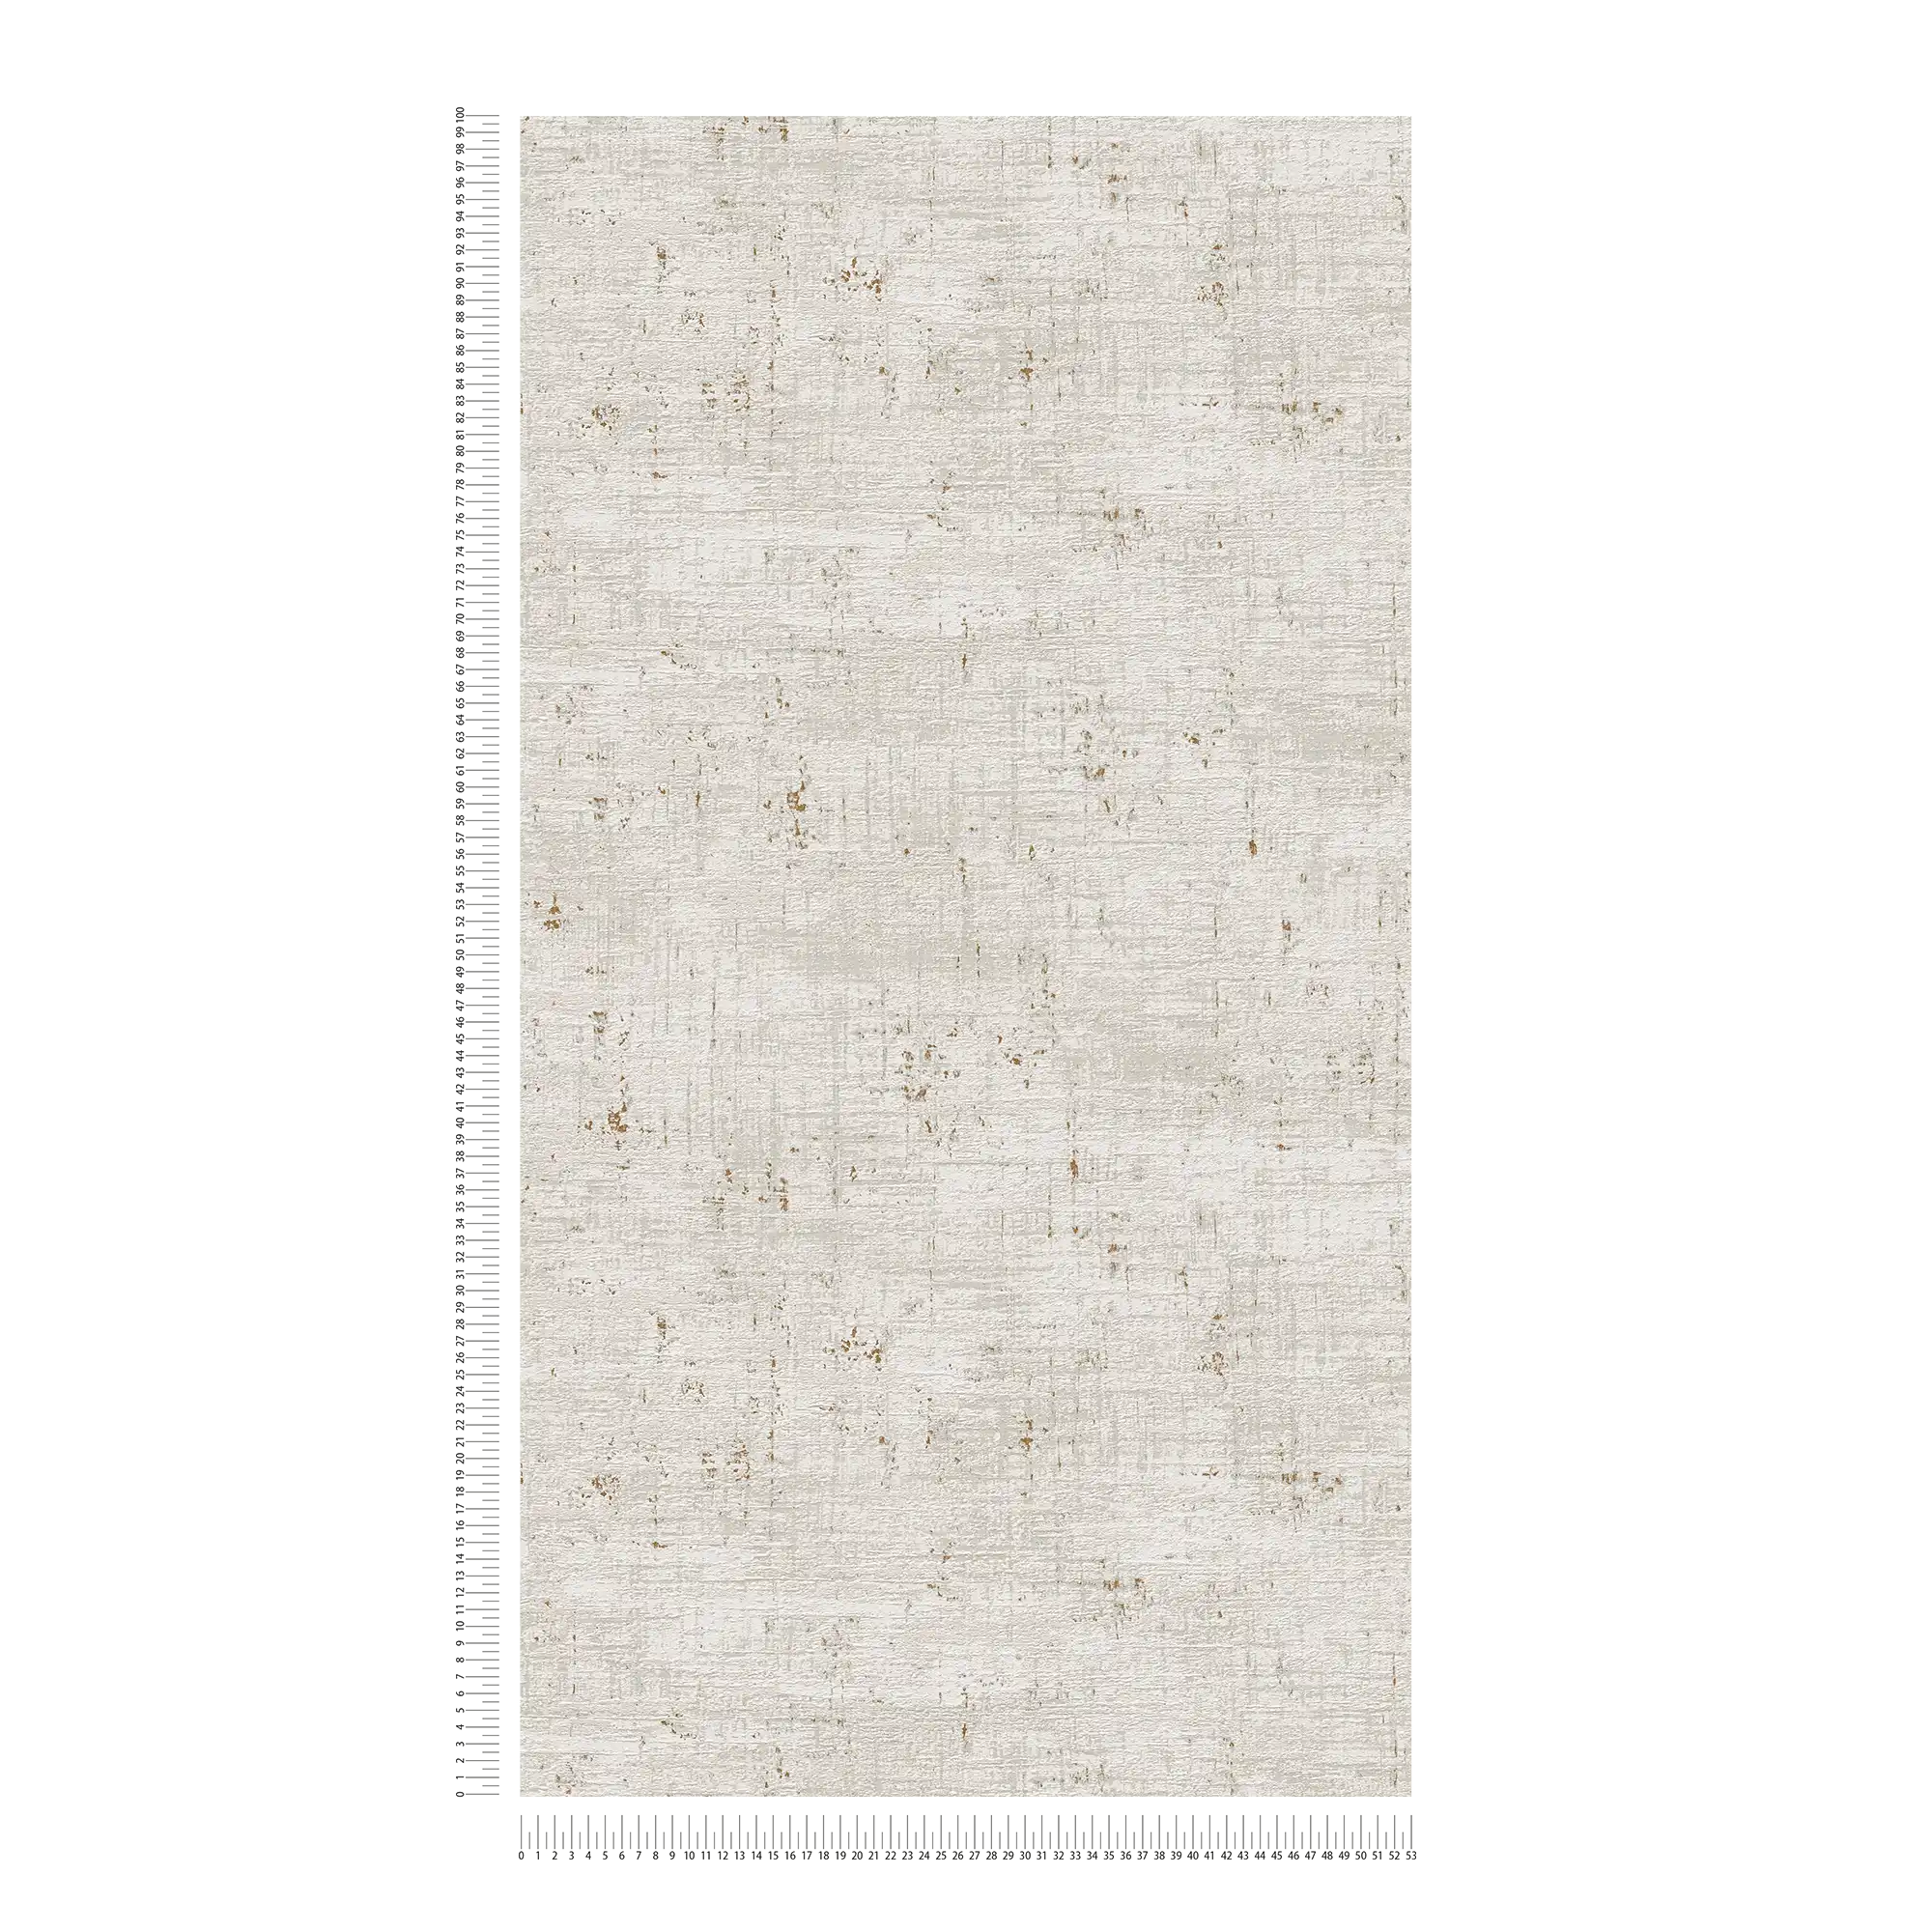             Carta da parati non tessuta in look used con accenti dorati - grigio, bianco, oro
        